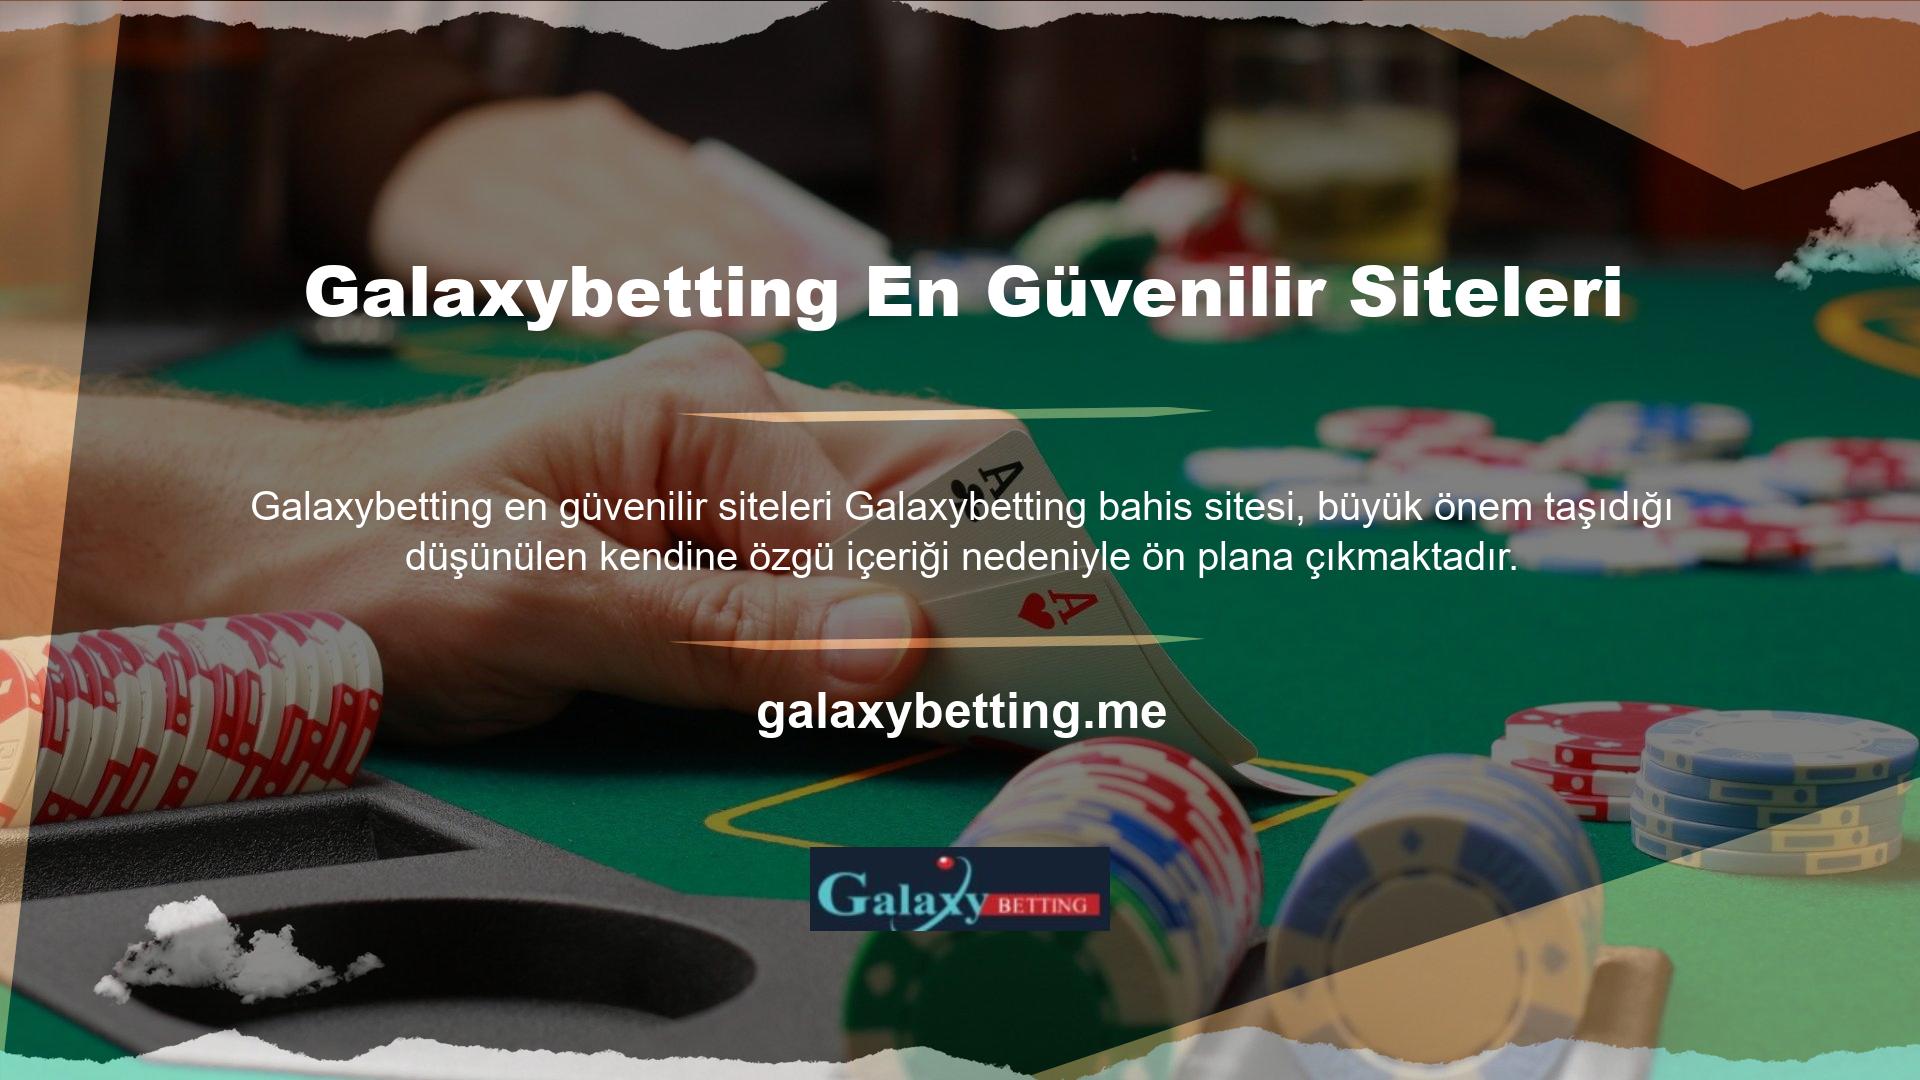 Spor bahis sitesi canlı ve sanal casino seçenekleri sunar